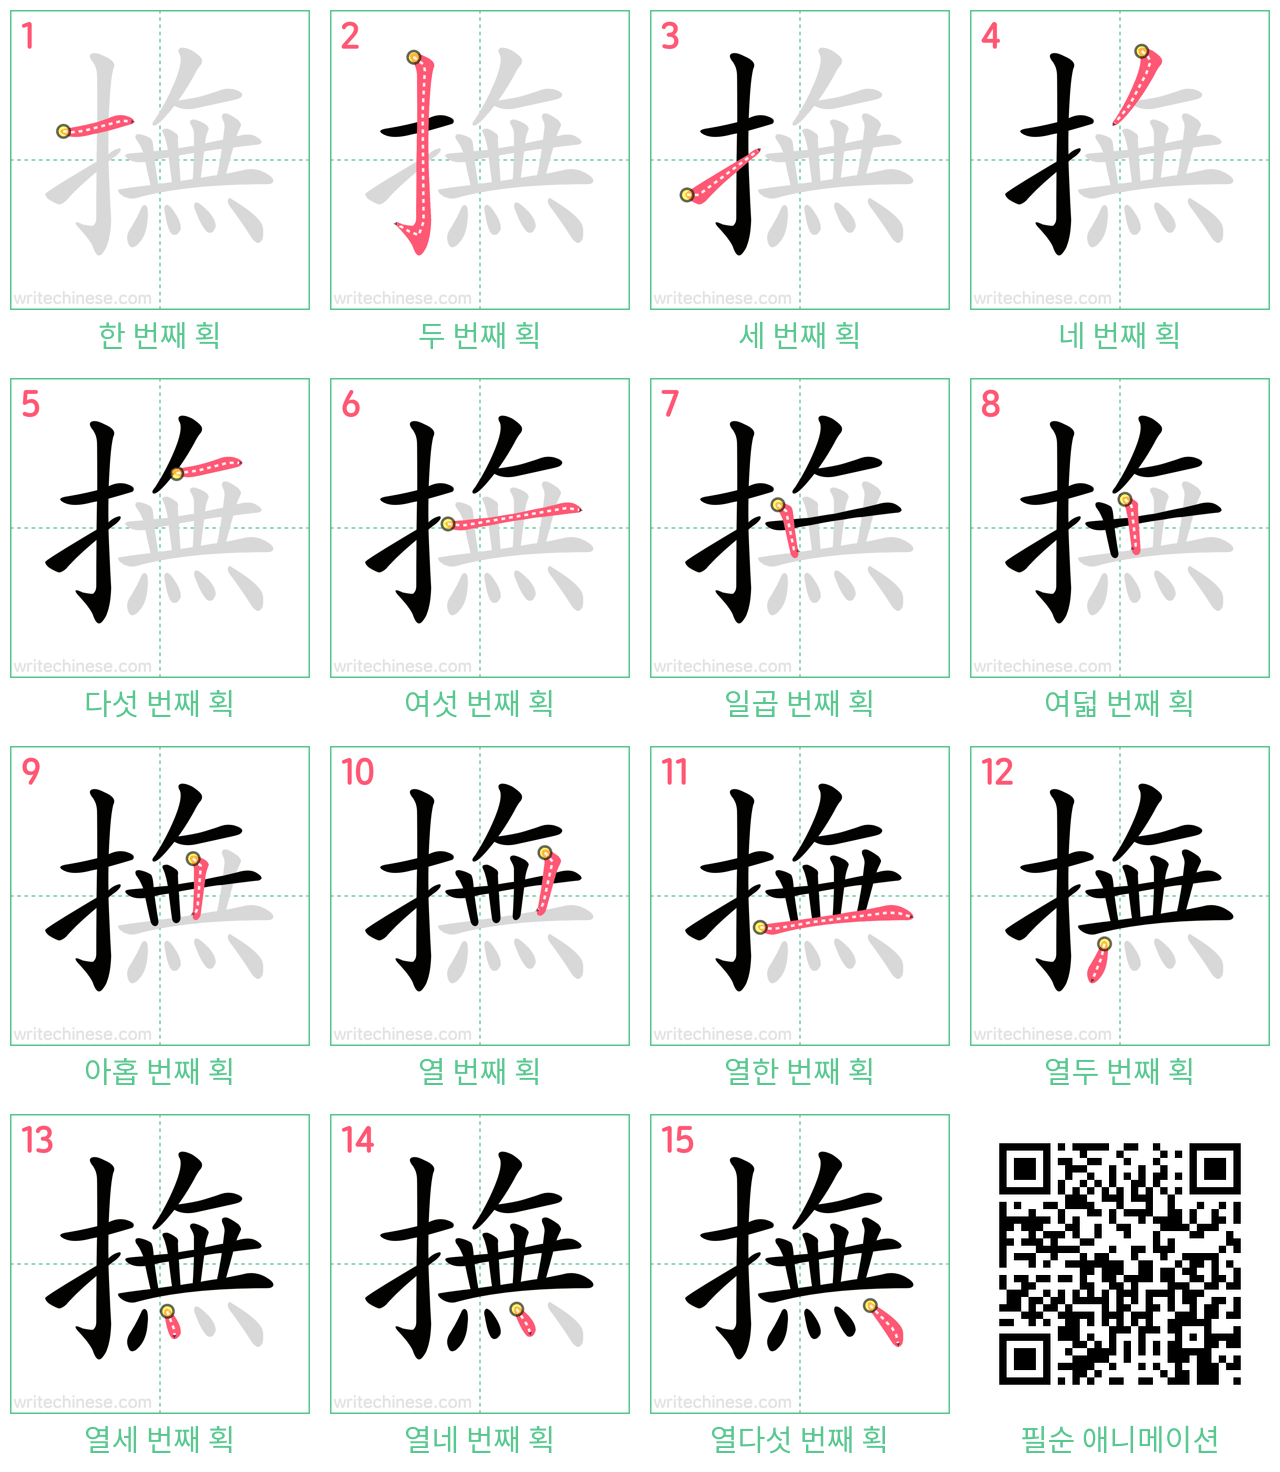 撫 step-by-step stroke order diagrams